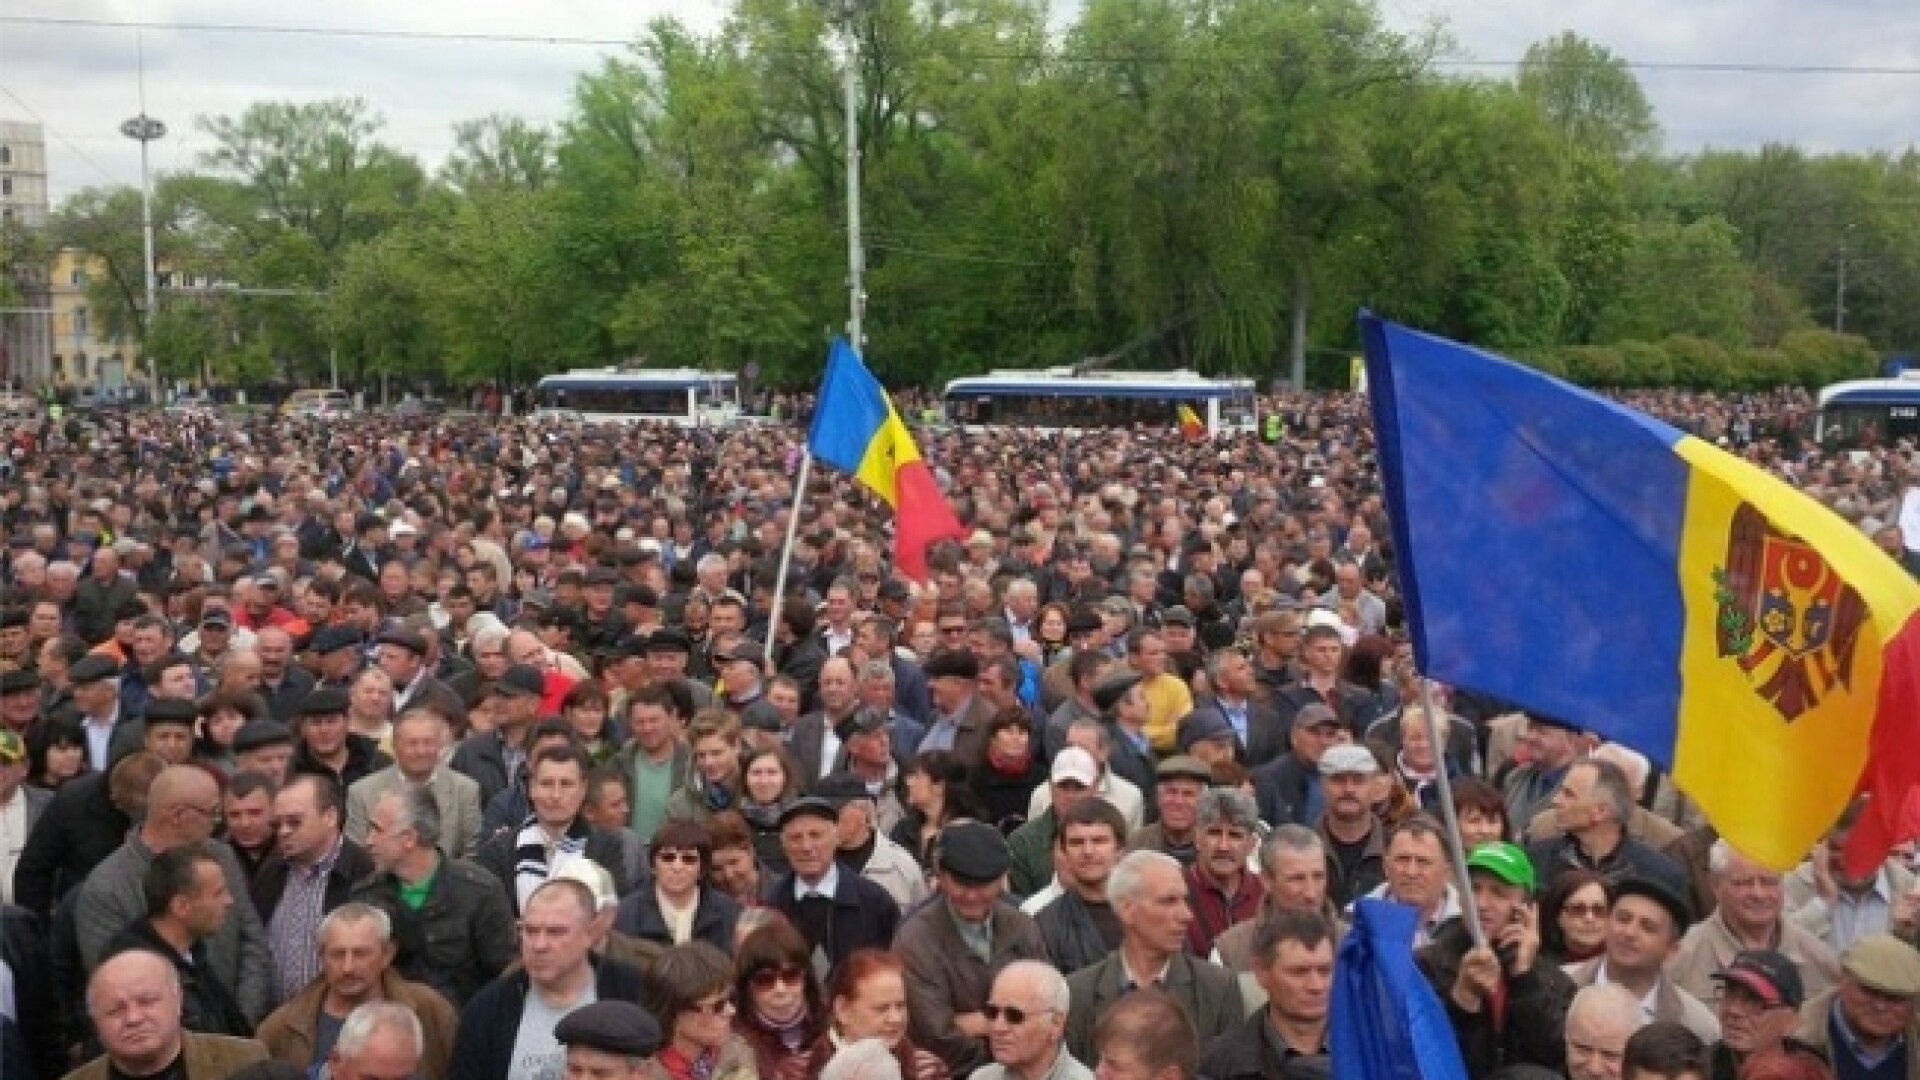 Protest in Chisinau - PRO TV CHISINAU